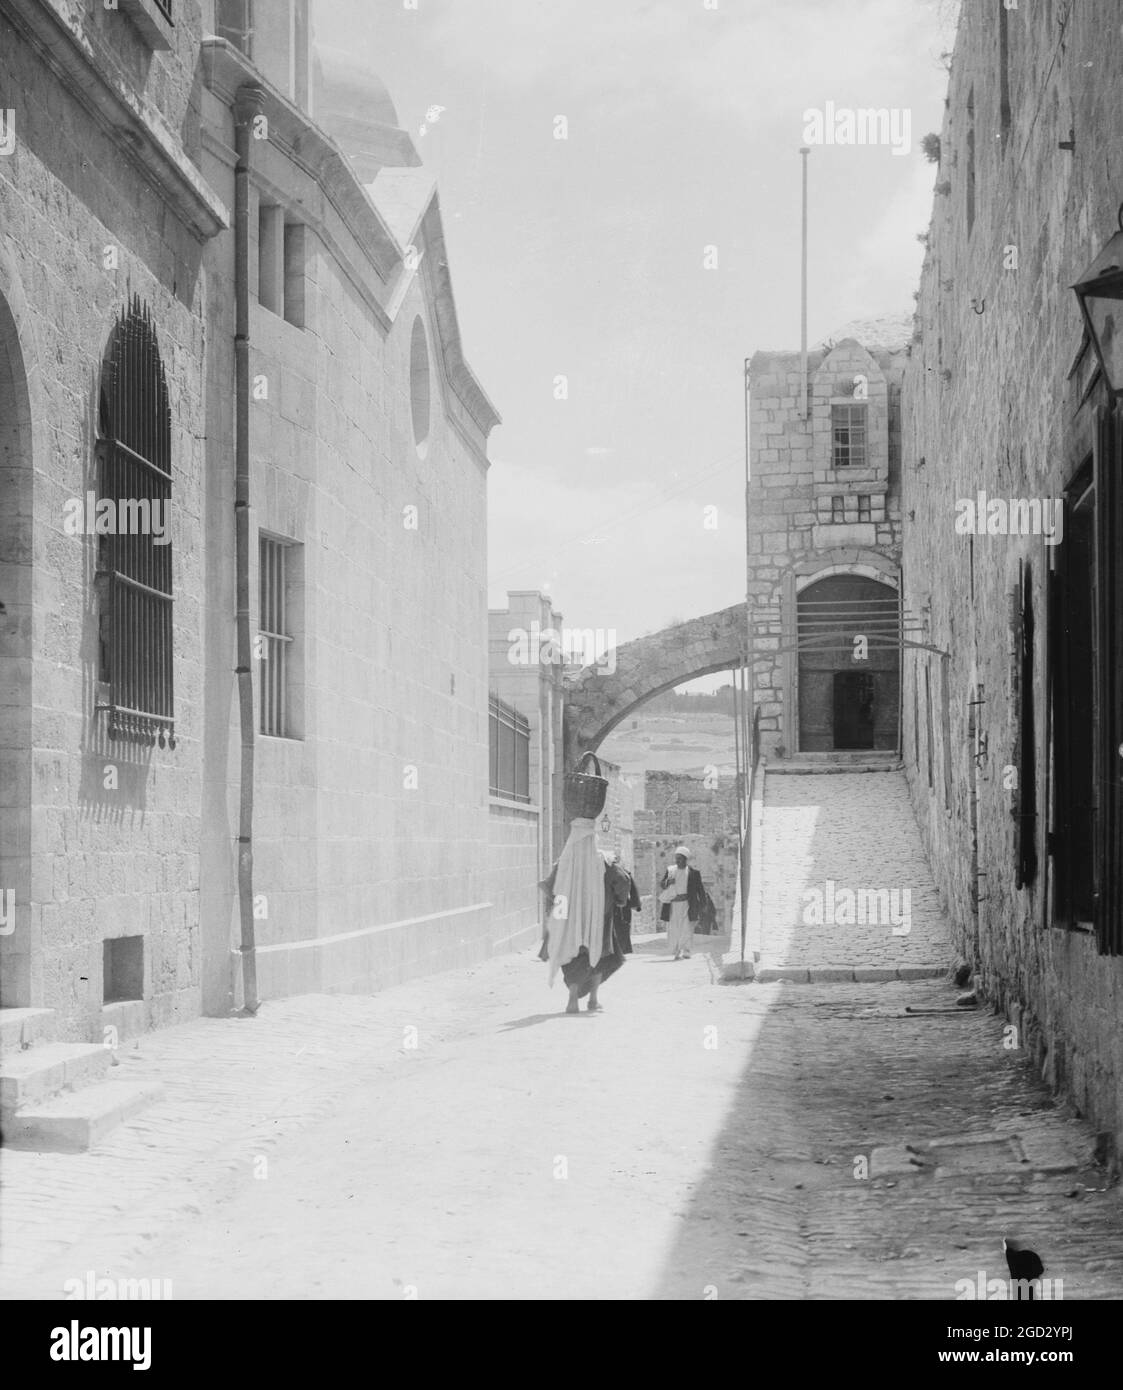 La gente cammina sulla Via dolorosa in Israele, iniziando dalla porta di Santo Stefano, tradizionalmente la seconda Stazione della Croce ca. 1900 Foto Stock